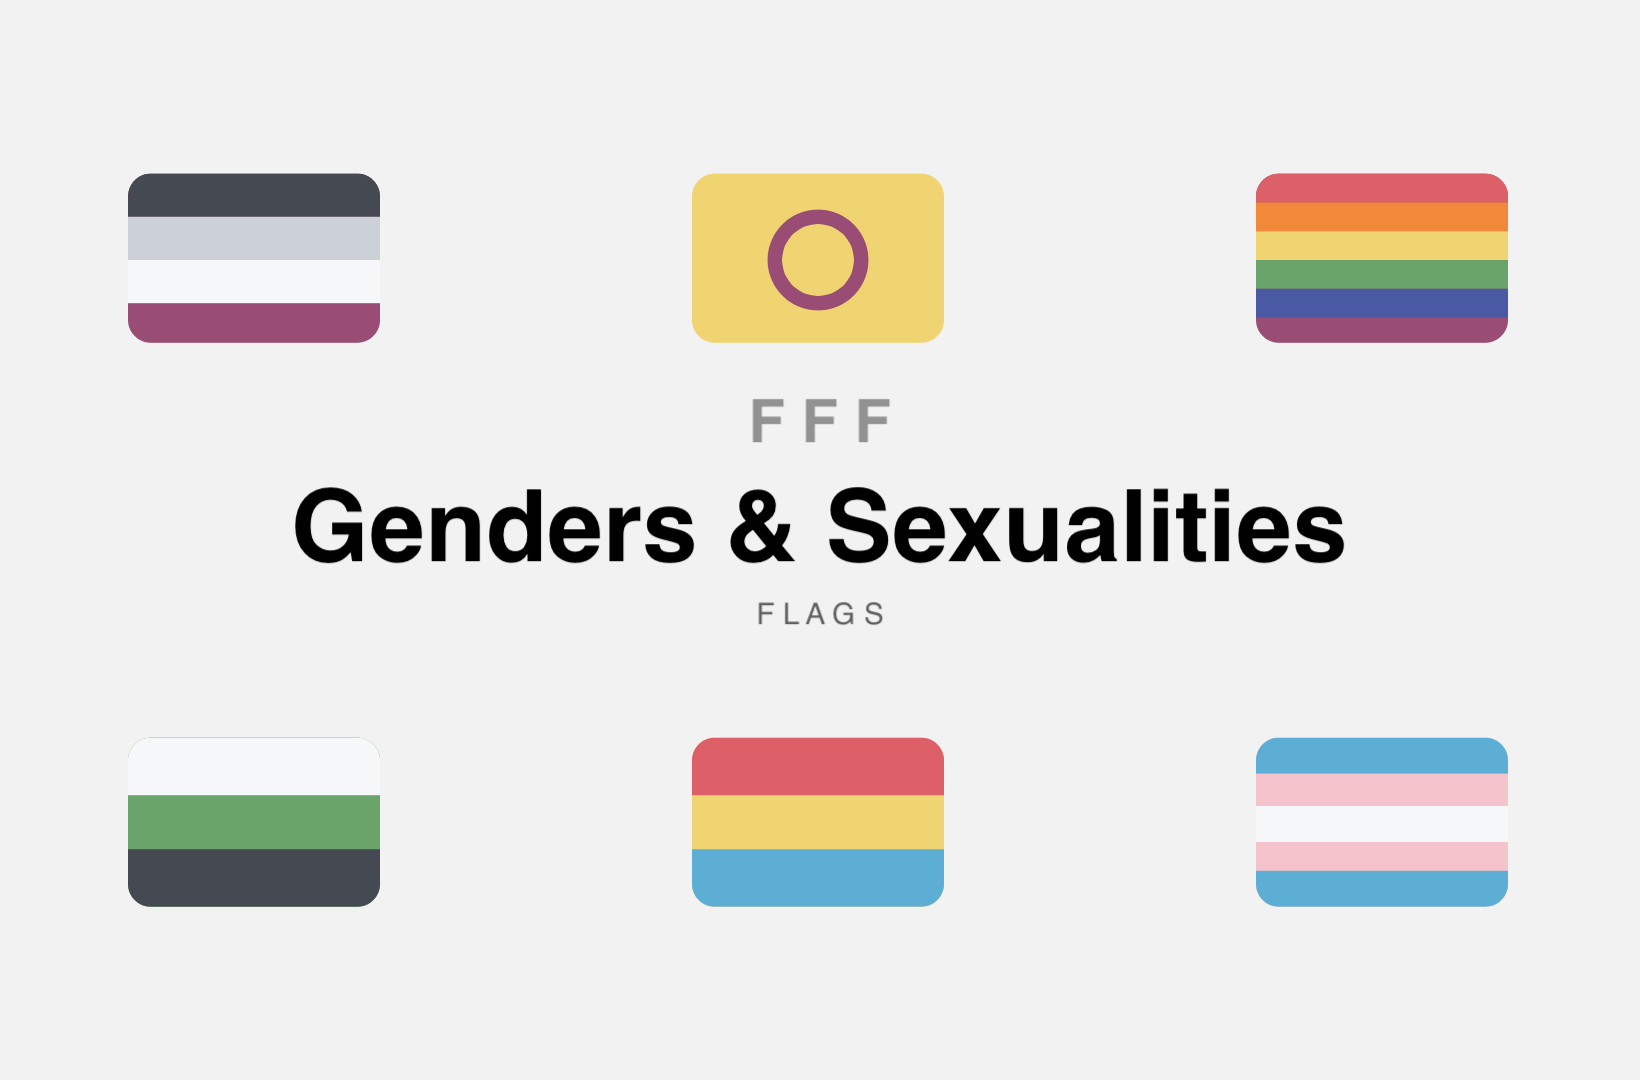 FFF Genders & Sexualities Flags